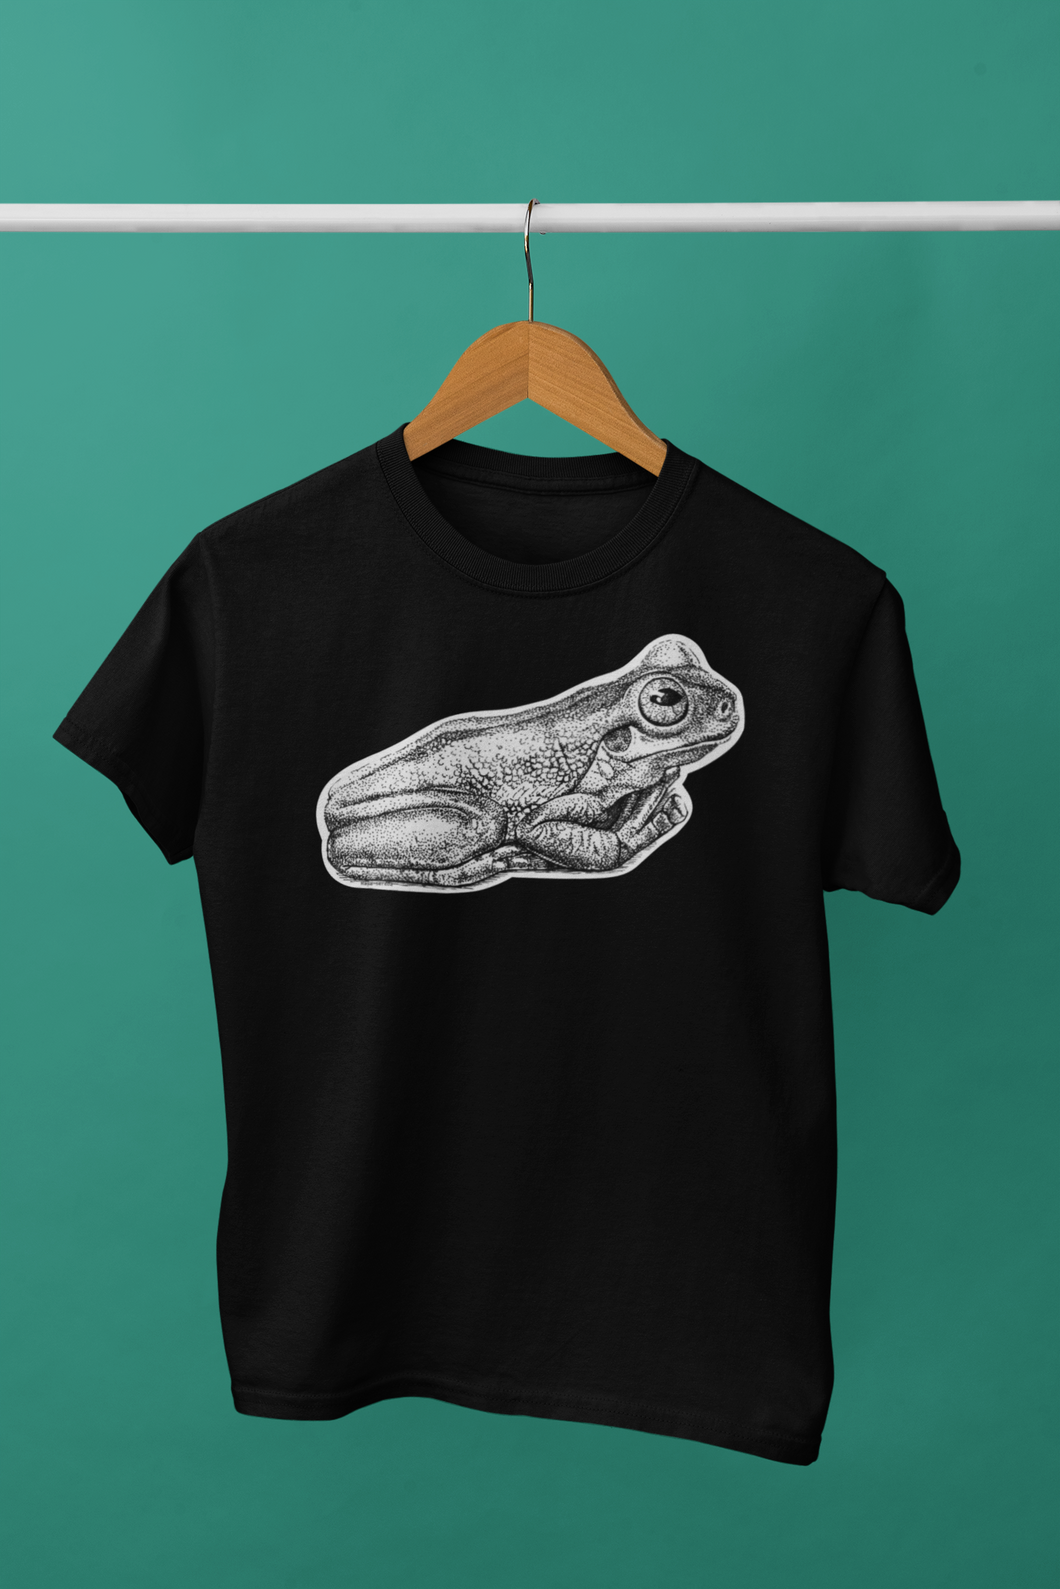 Frog Style Men's/Unisex or Women's T-shirt